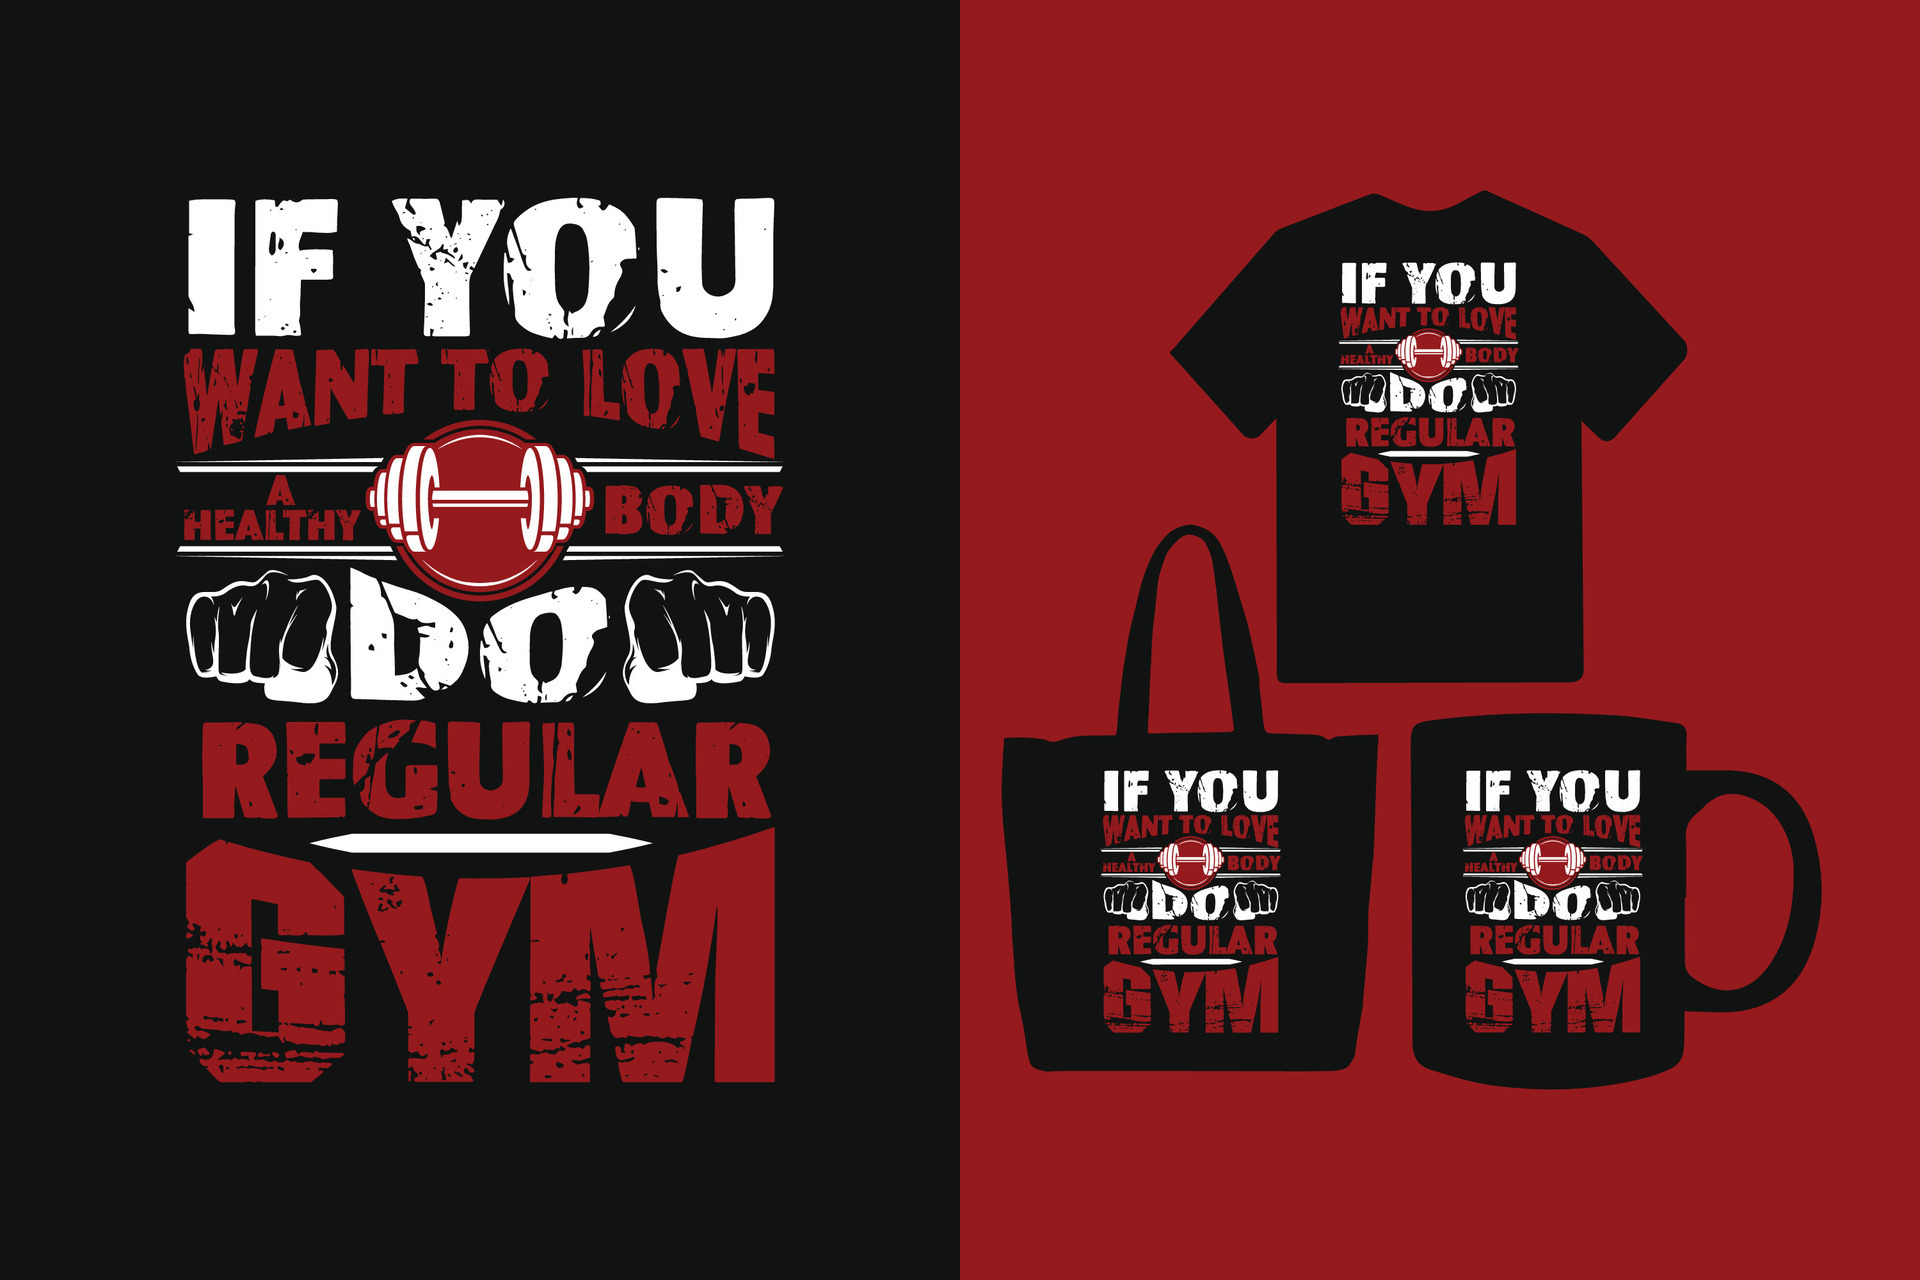 https://static.vecteezy.com/system/resources/previews/027/893/879/original/gym-t-shirt-design-gym-fitness-t-shirt-design-gym-workout-t-shirt-design-vintage-t-shirt-design-workout-t-shirt-design-workout-fitness-t-shirt-design-fitness-typography-t-shirt-design-vector.jpg